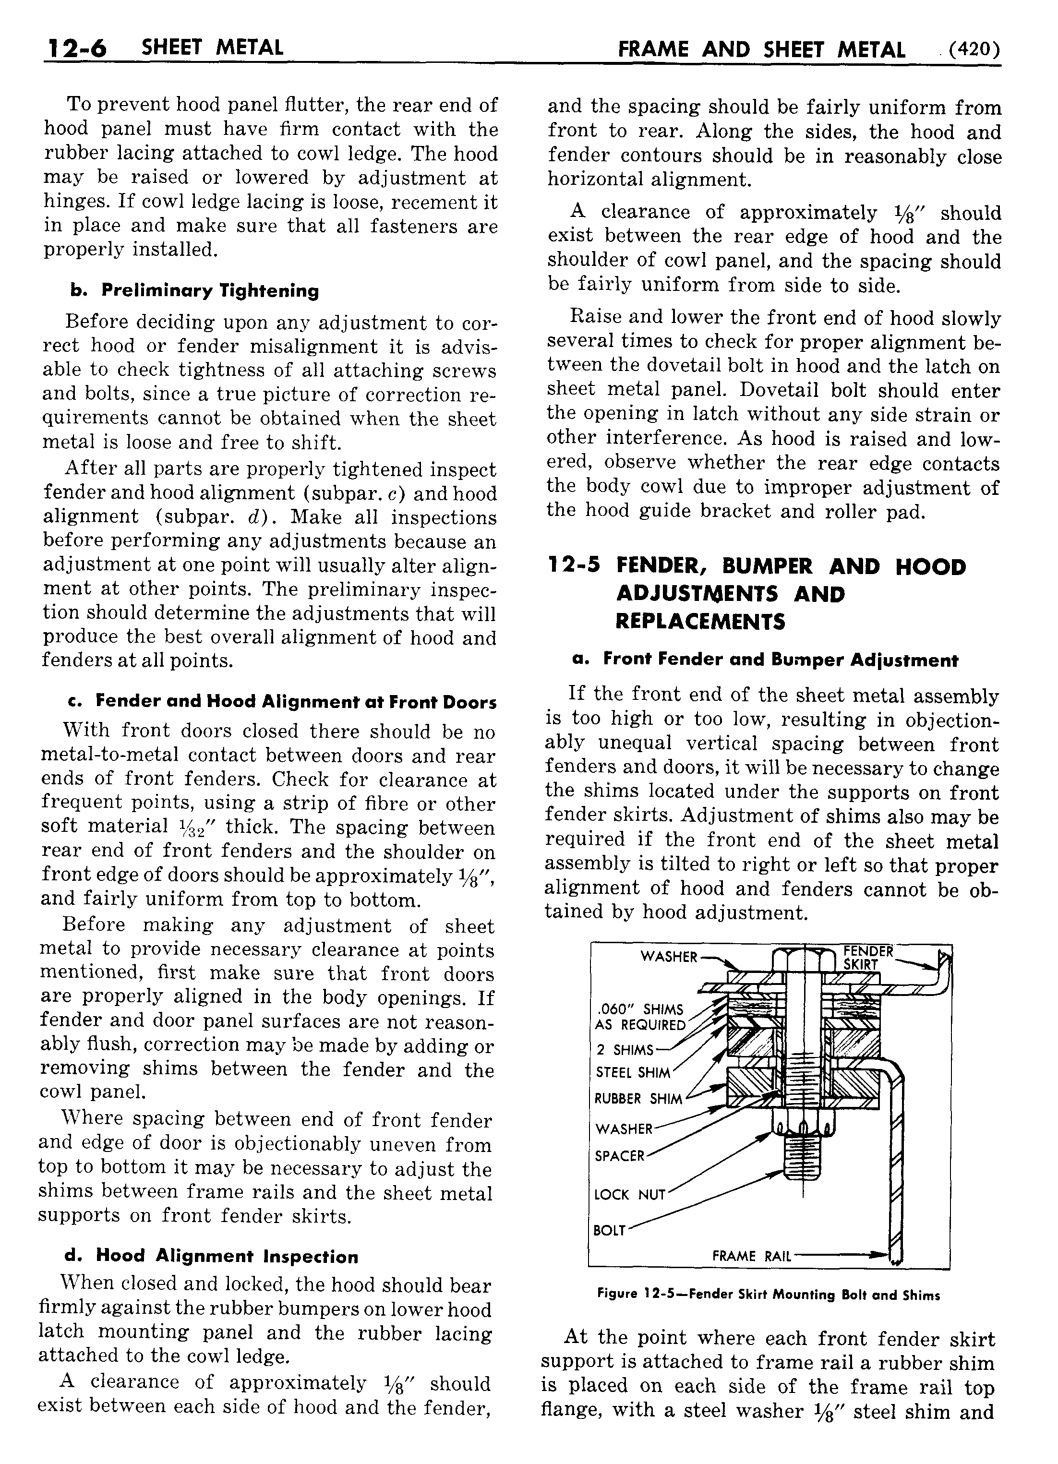 n_13 1955 Buick Shop Manual - Frame & Sheet Metal-006-006.jpg